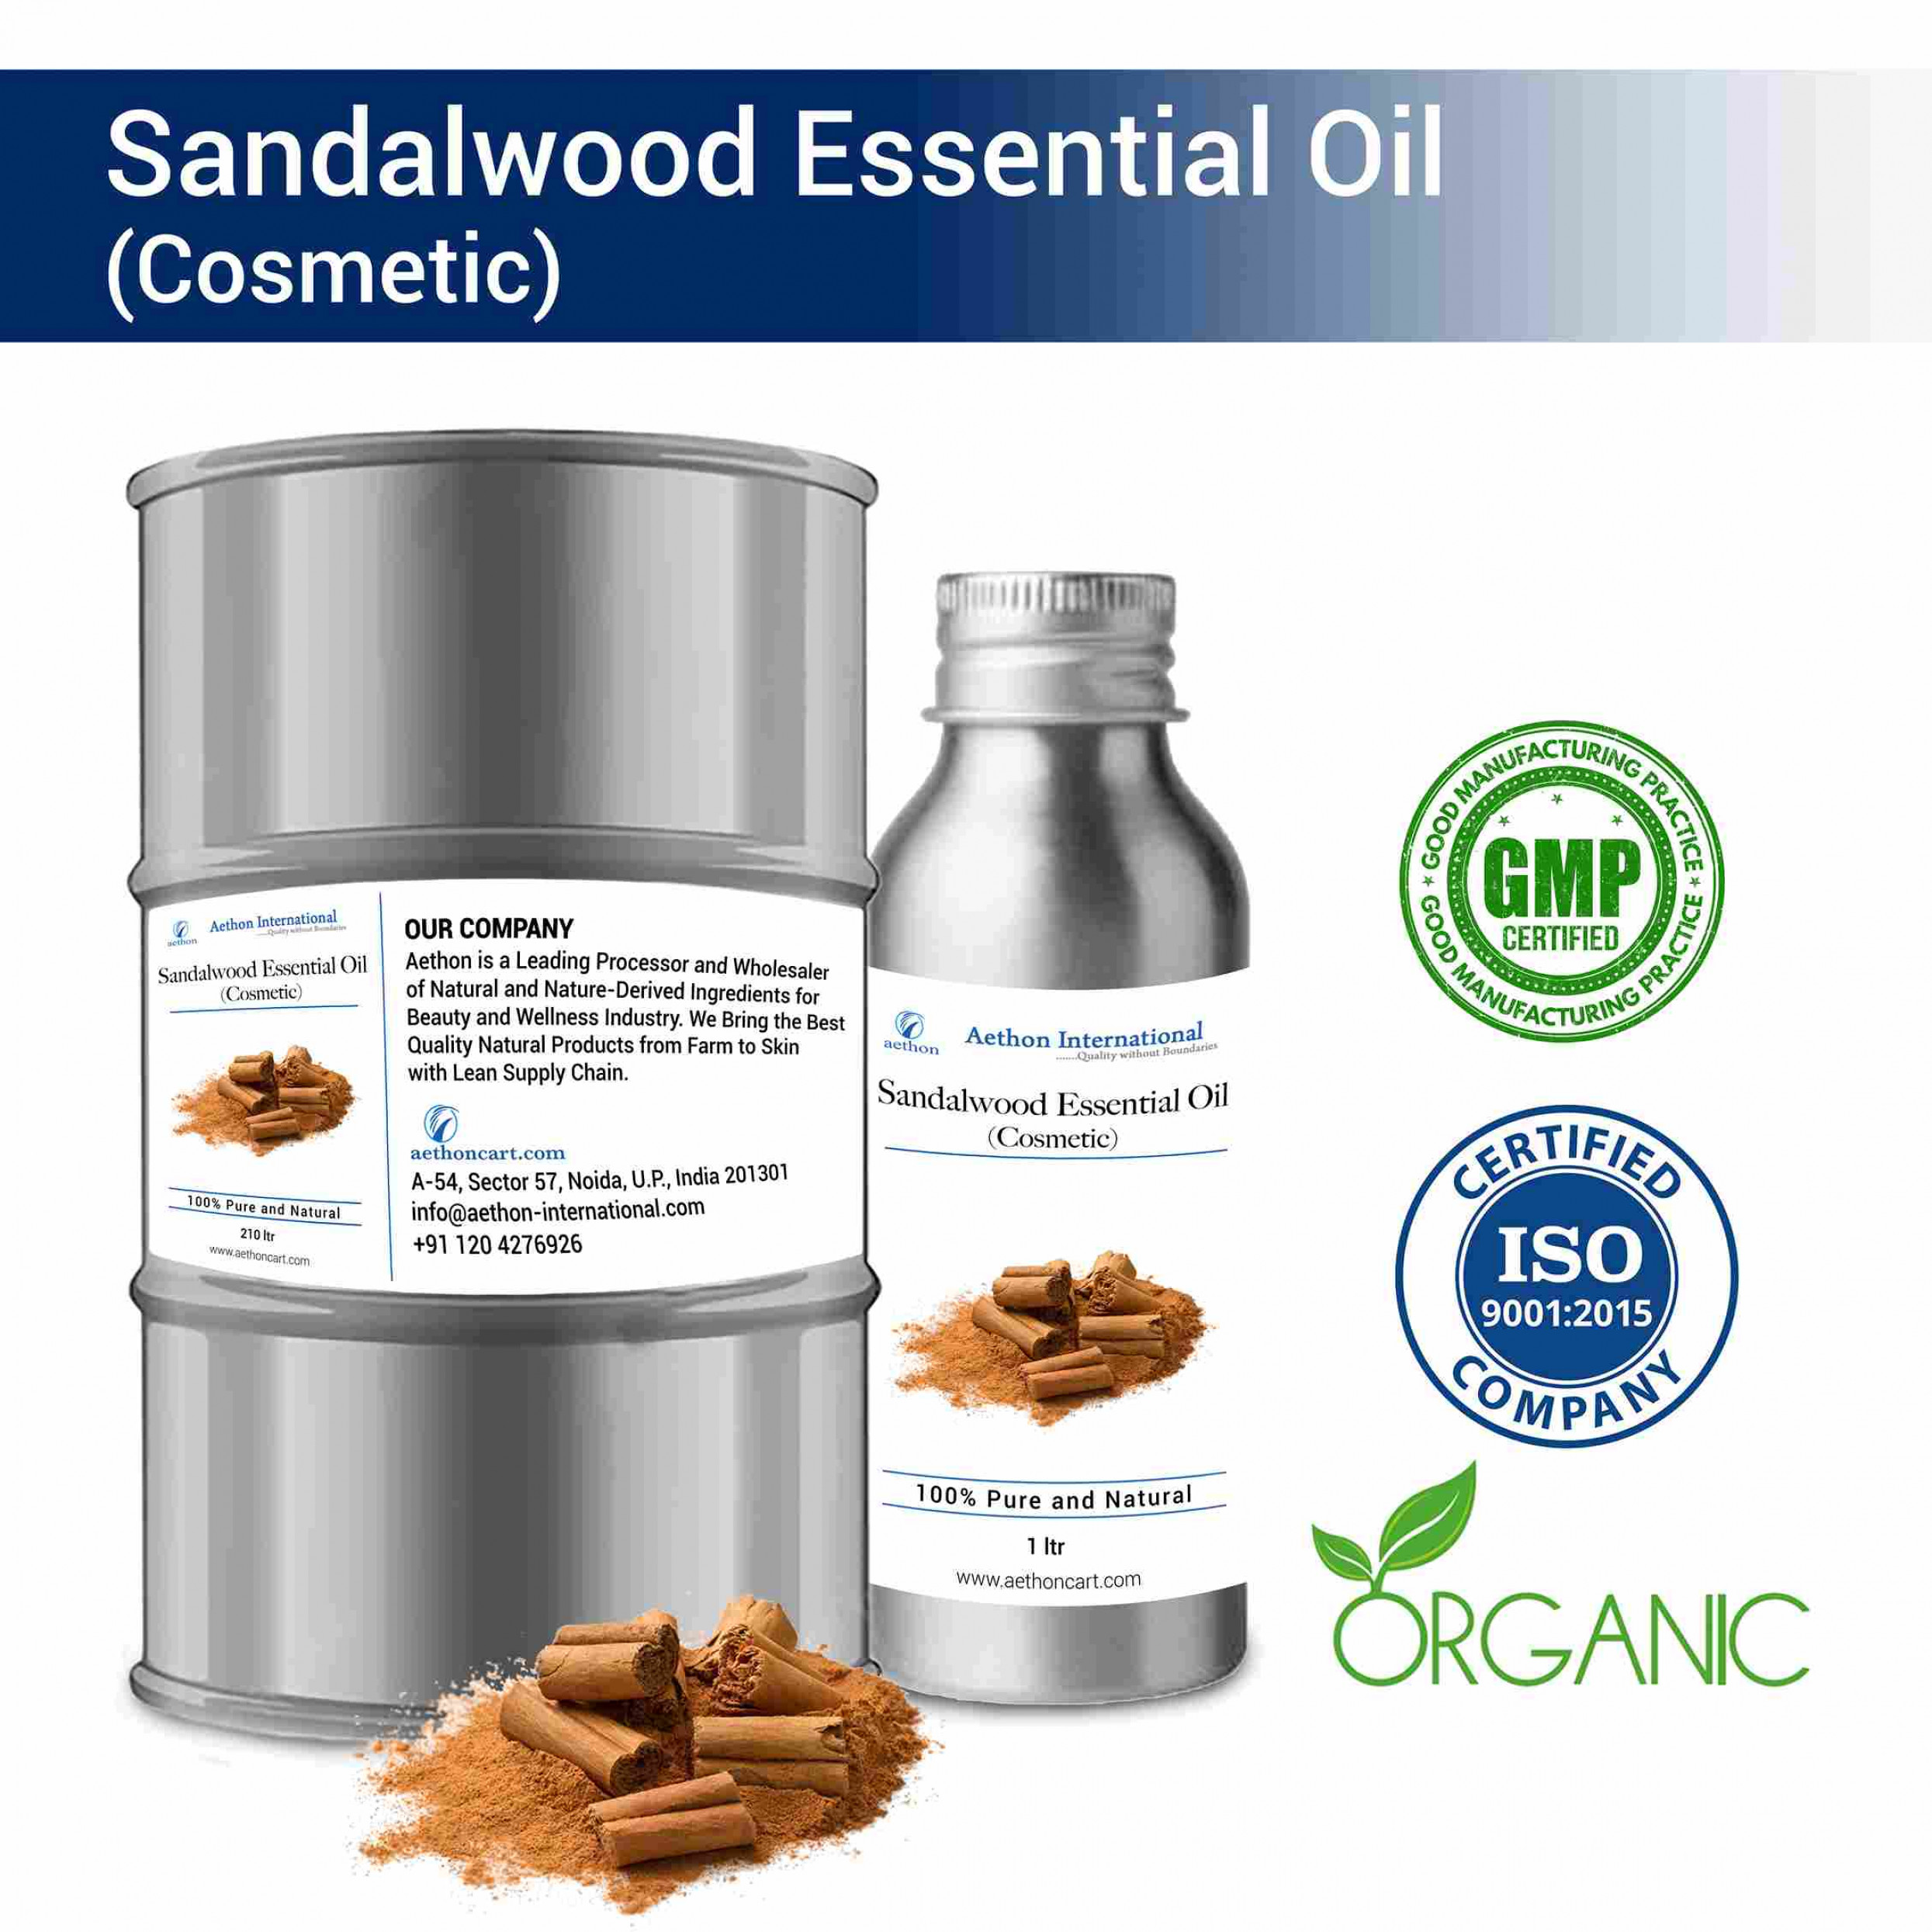 Sandalwood Essential Oil (Cosmetic)